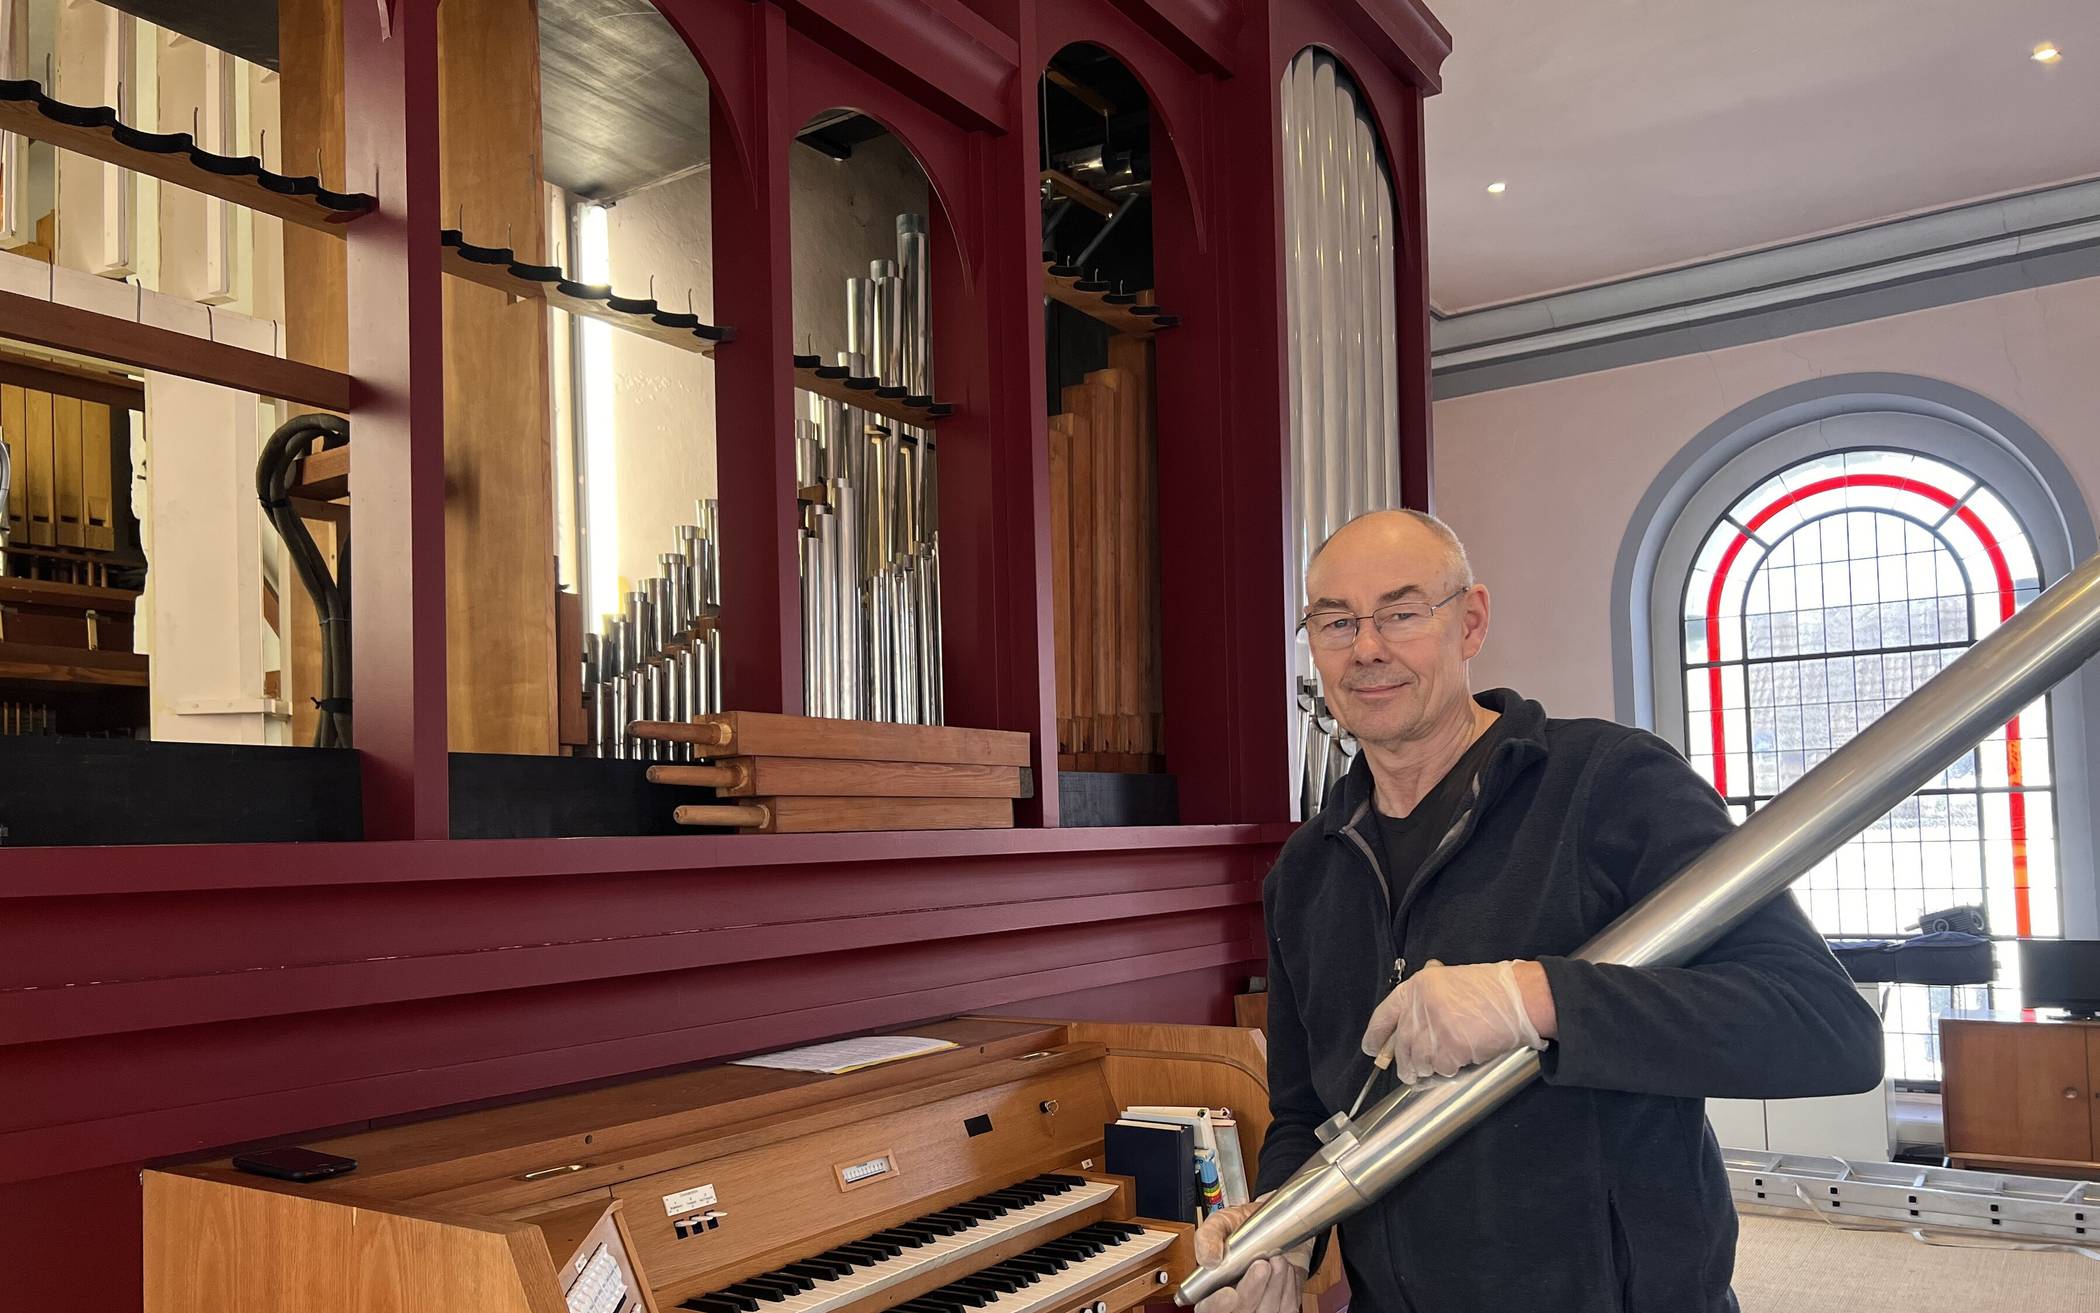 Orgelbauer Uwe Cantzler reinigt derzeit mit seinem Team die Orgel in der Evangelischen Kirche in Alt-Erkrath.